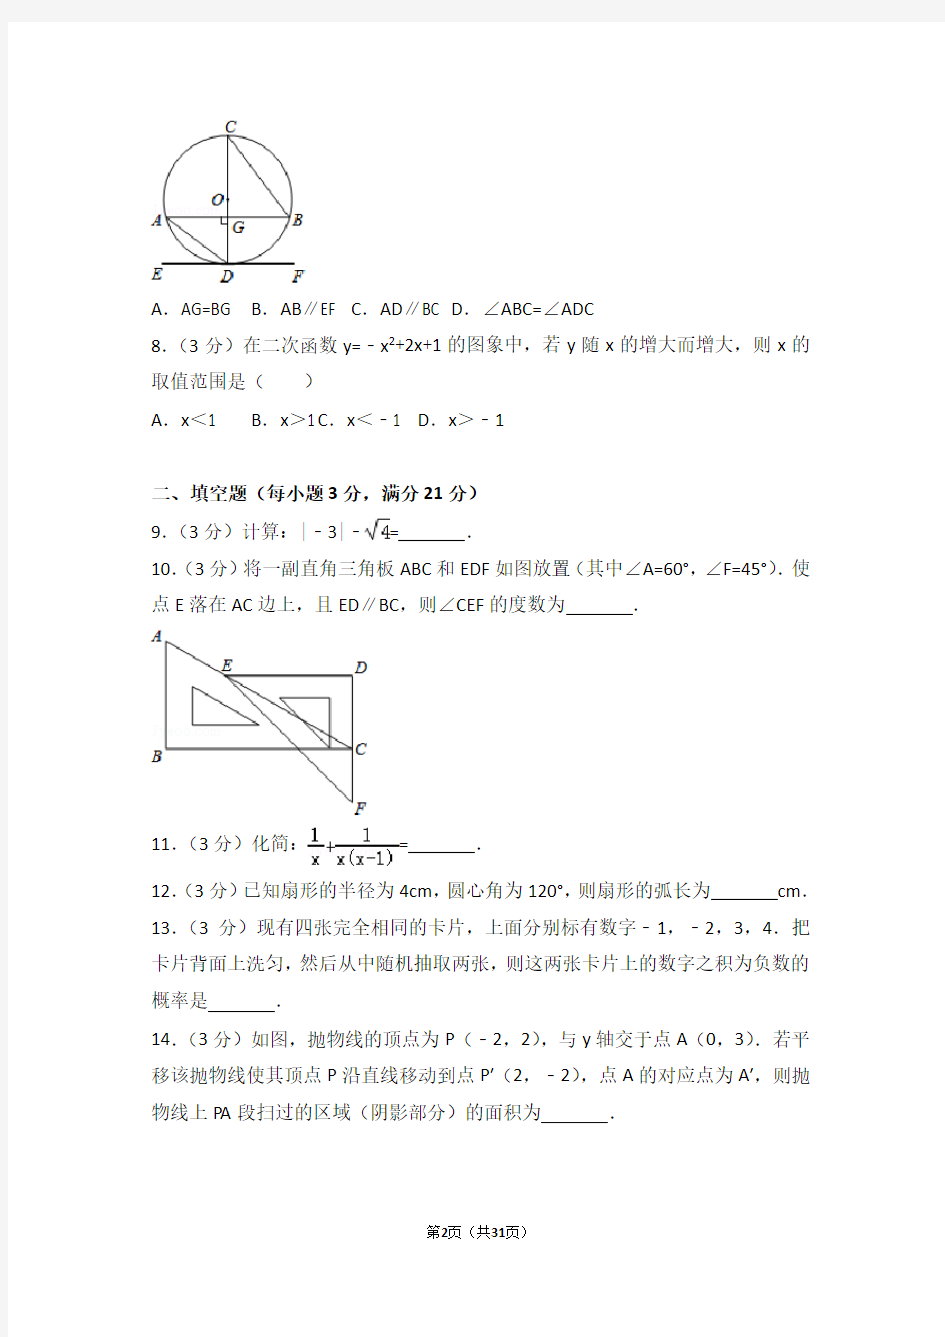 2013年河南省中考数学试卷